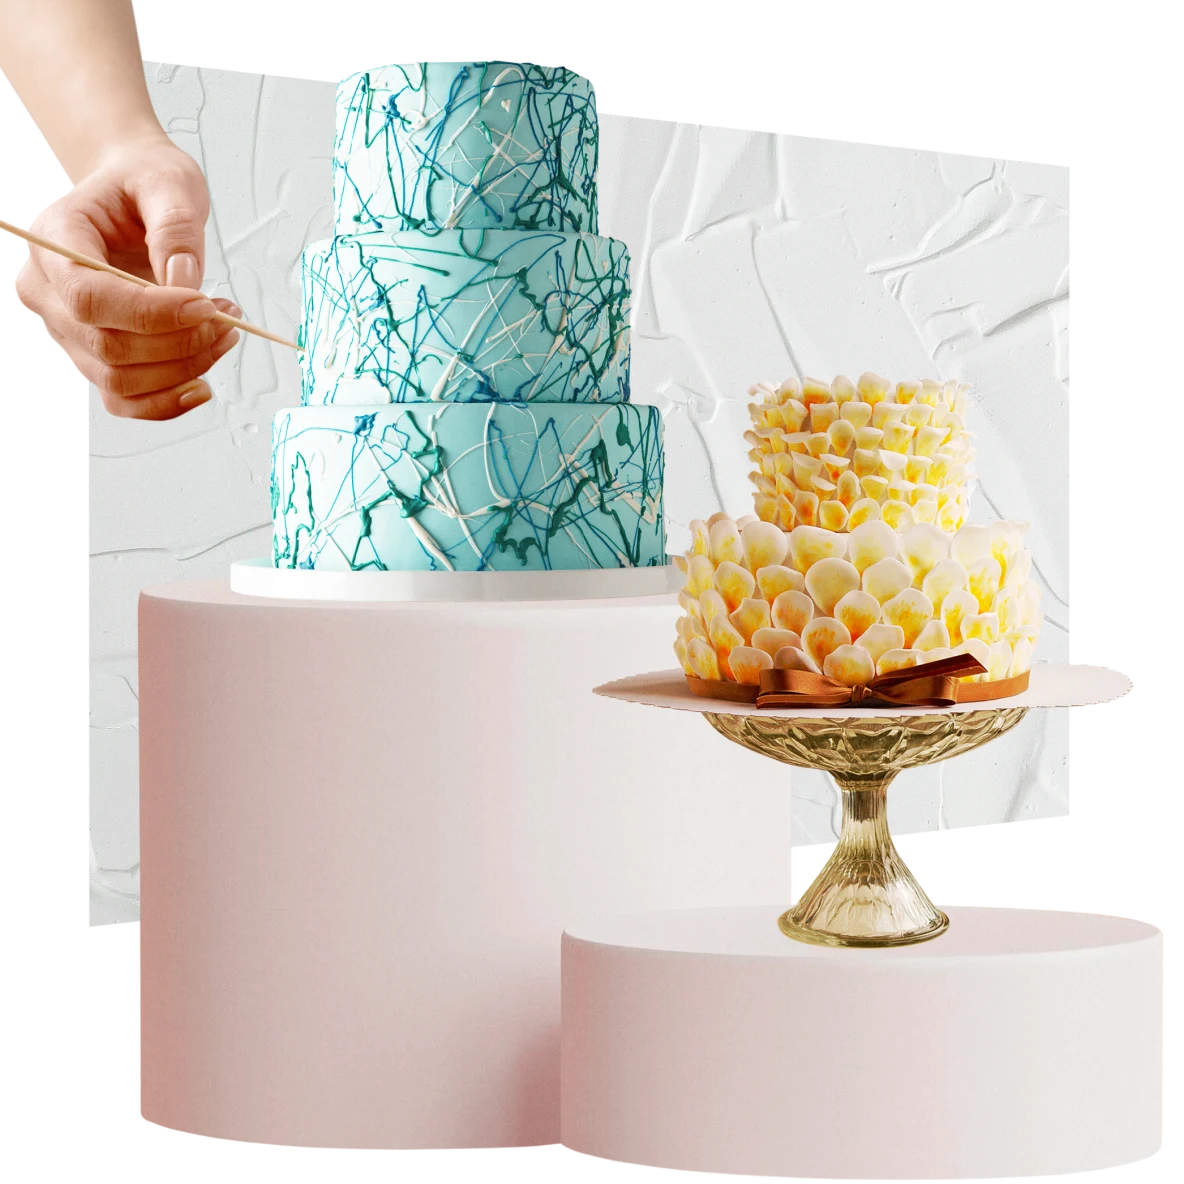 À gauche, gâteau vert clair à trois étages auquel une main ajoute des détails. À droite, petit gâteau jaune et blanc à deux étages. Glaçage blanc en arrière-plan.